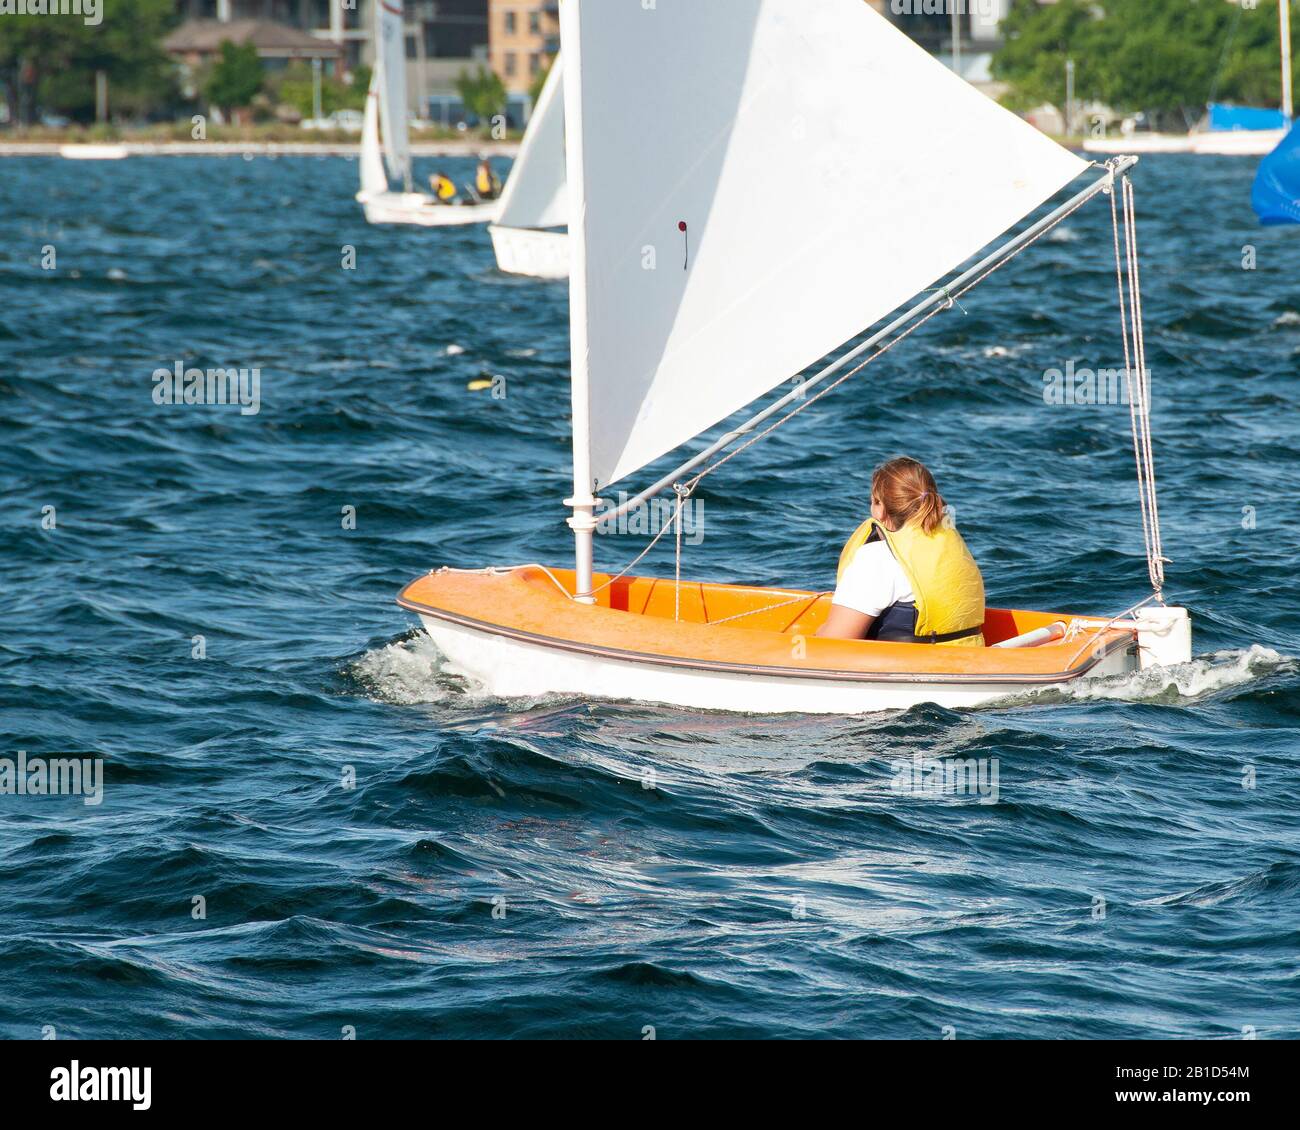 Enfant naviguant dans un petit bateau et en compétition. Travail d'équipe par des marins juniors en course sur le lac d'eau salée Macquarie. Photo à usage commercial. Banque D'Images